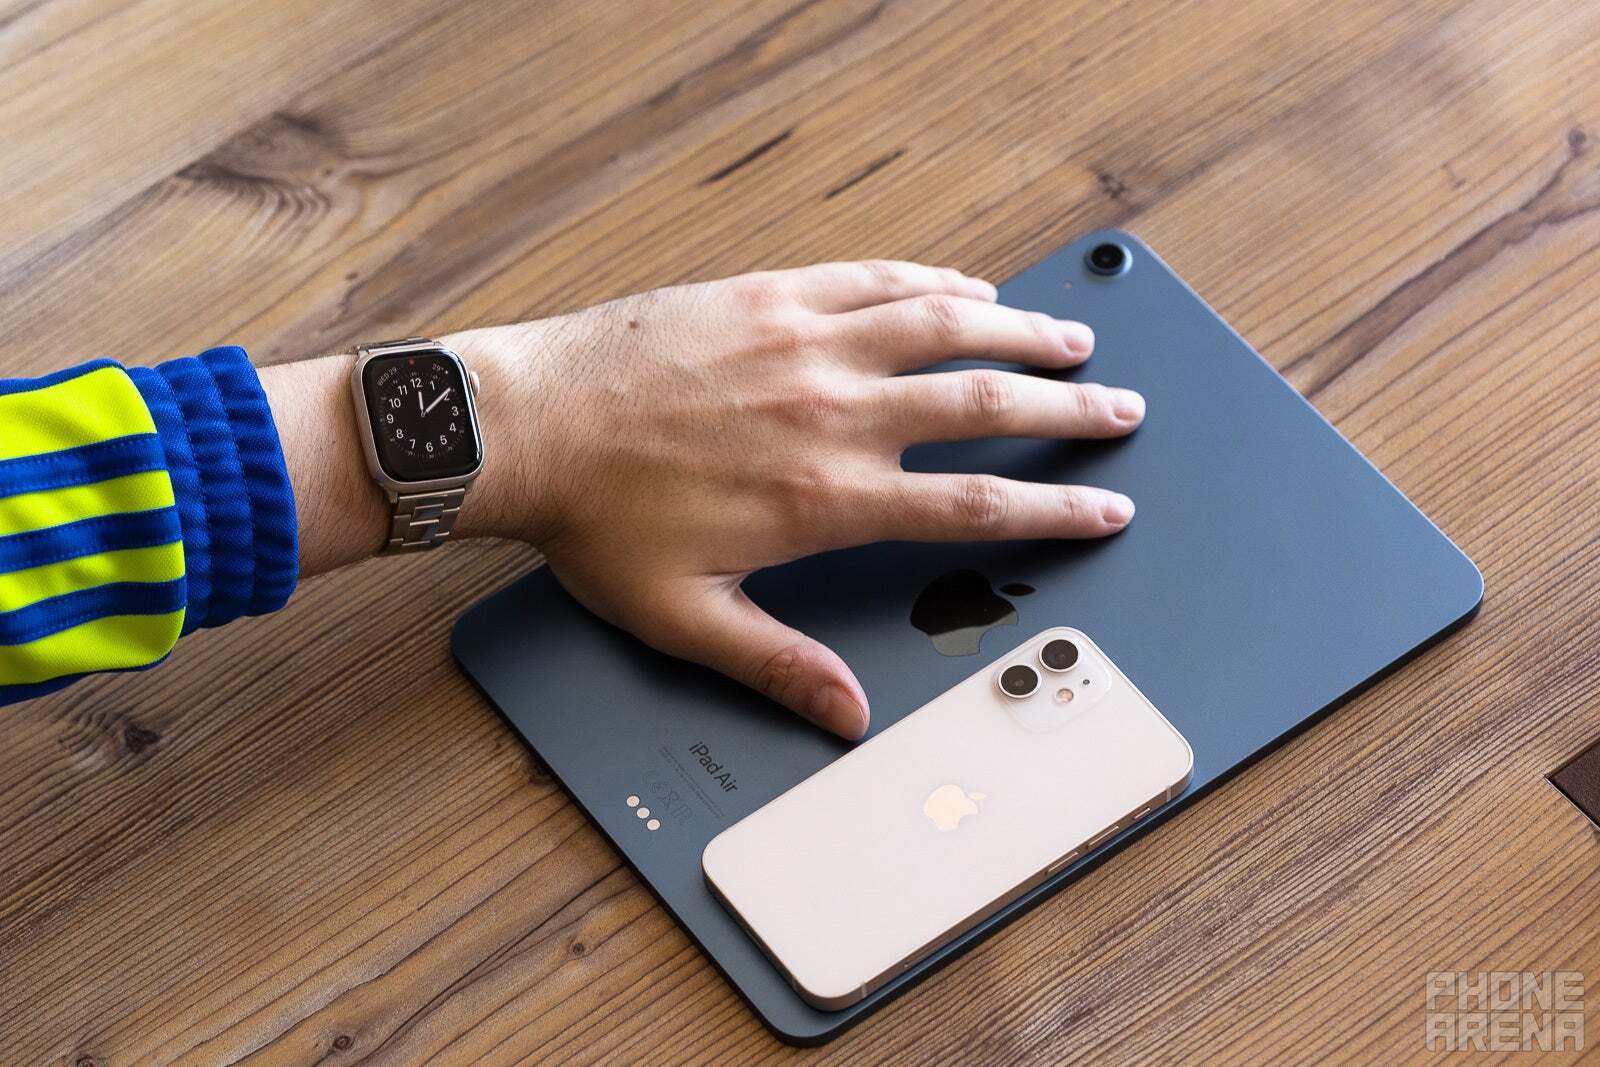 iPhone, iPad Air, Apple Watch - Daha hızlı bir Snapdragon 8 Gen 4 çipi, iPhone'un üstünlük günlerine gerçekten son verebilir mi?